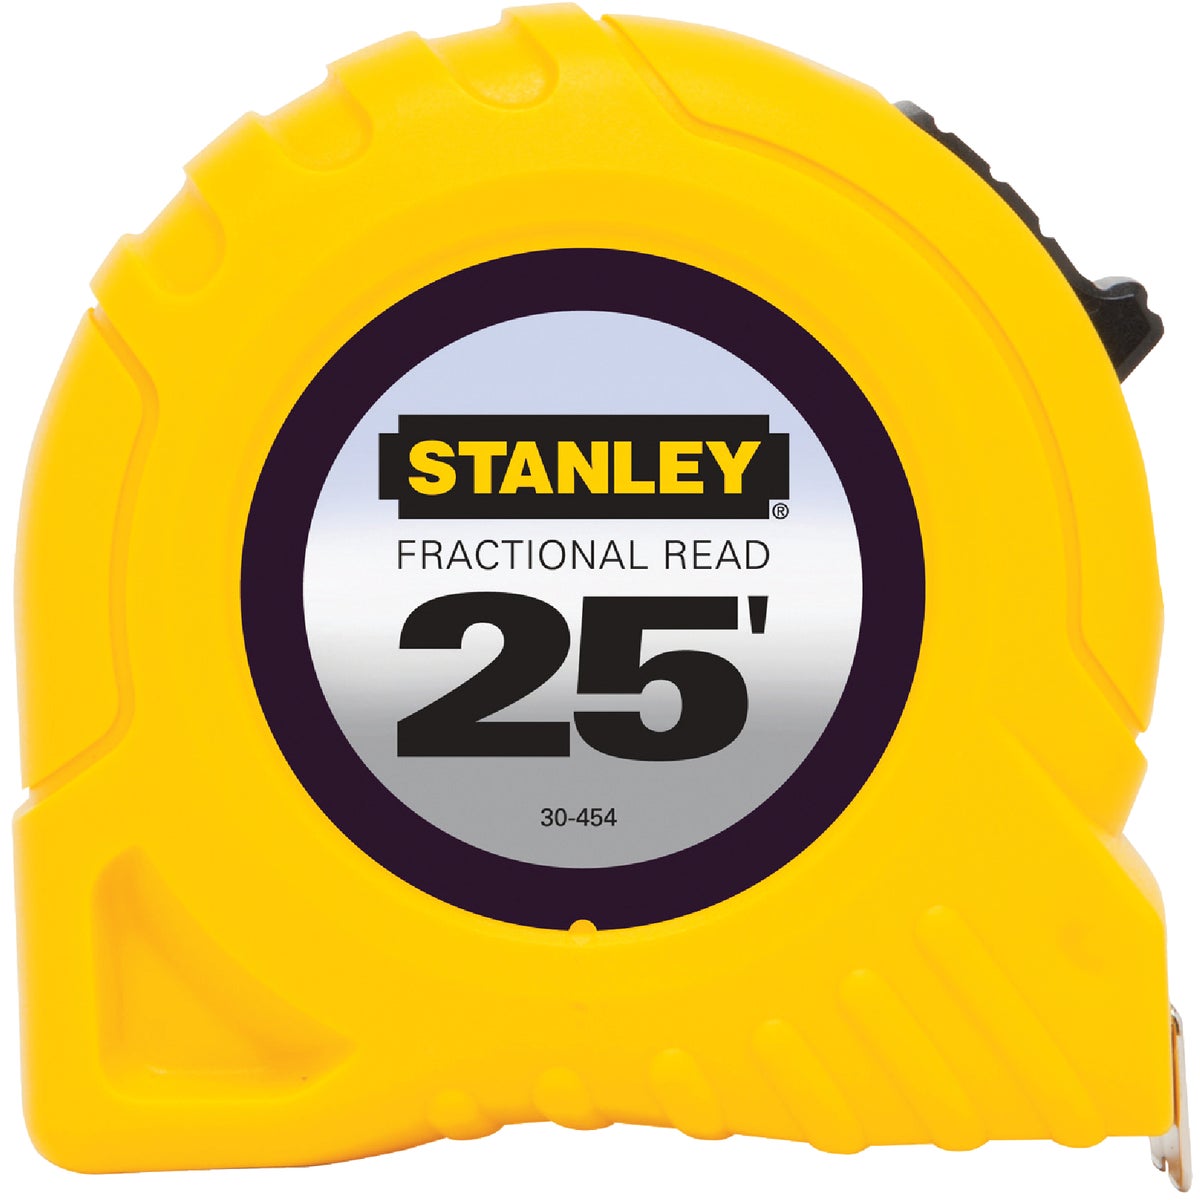 Stanley 25 Ft. Fractional Tape Measure